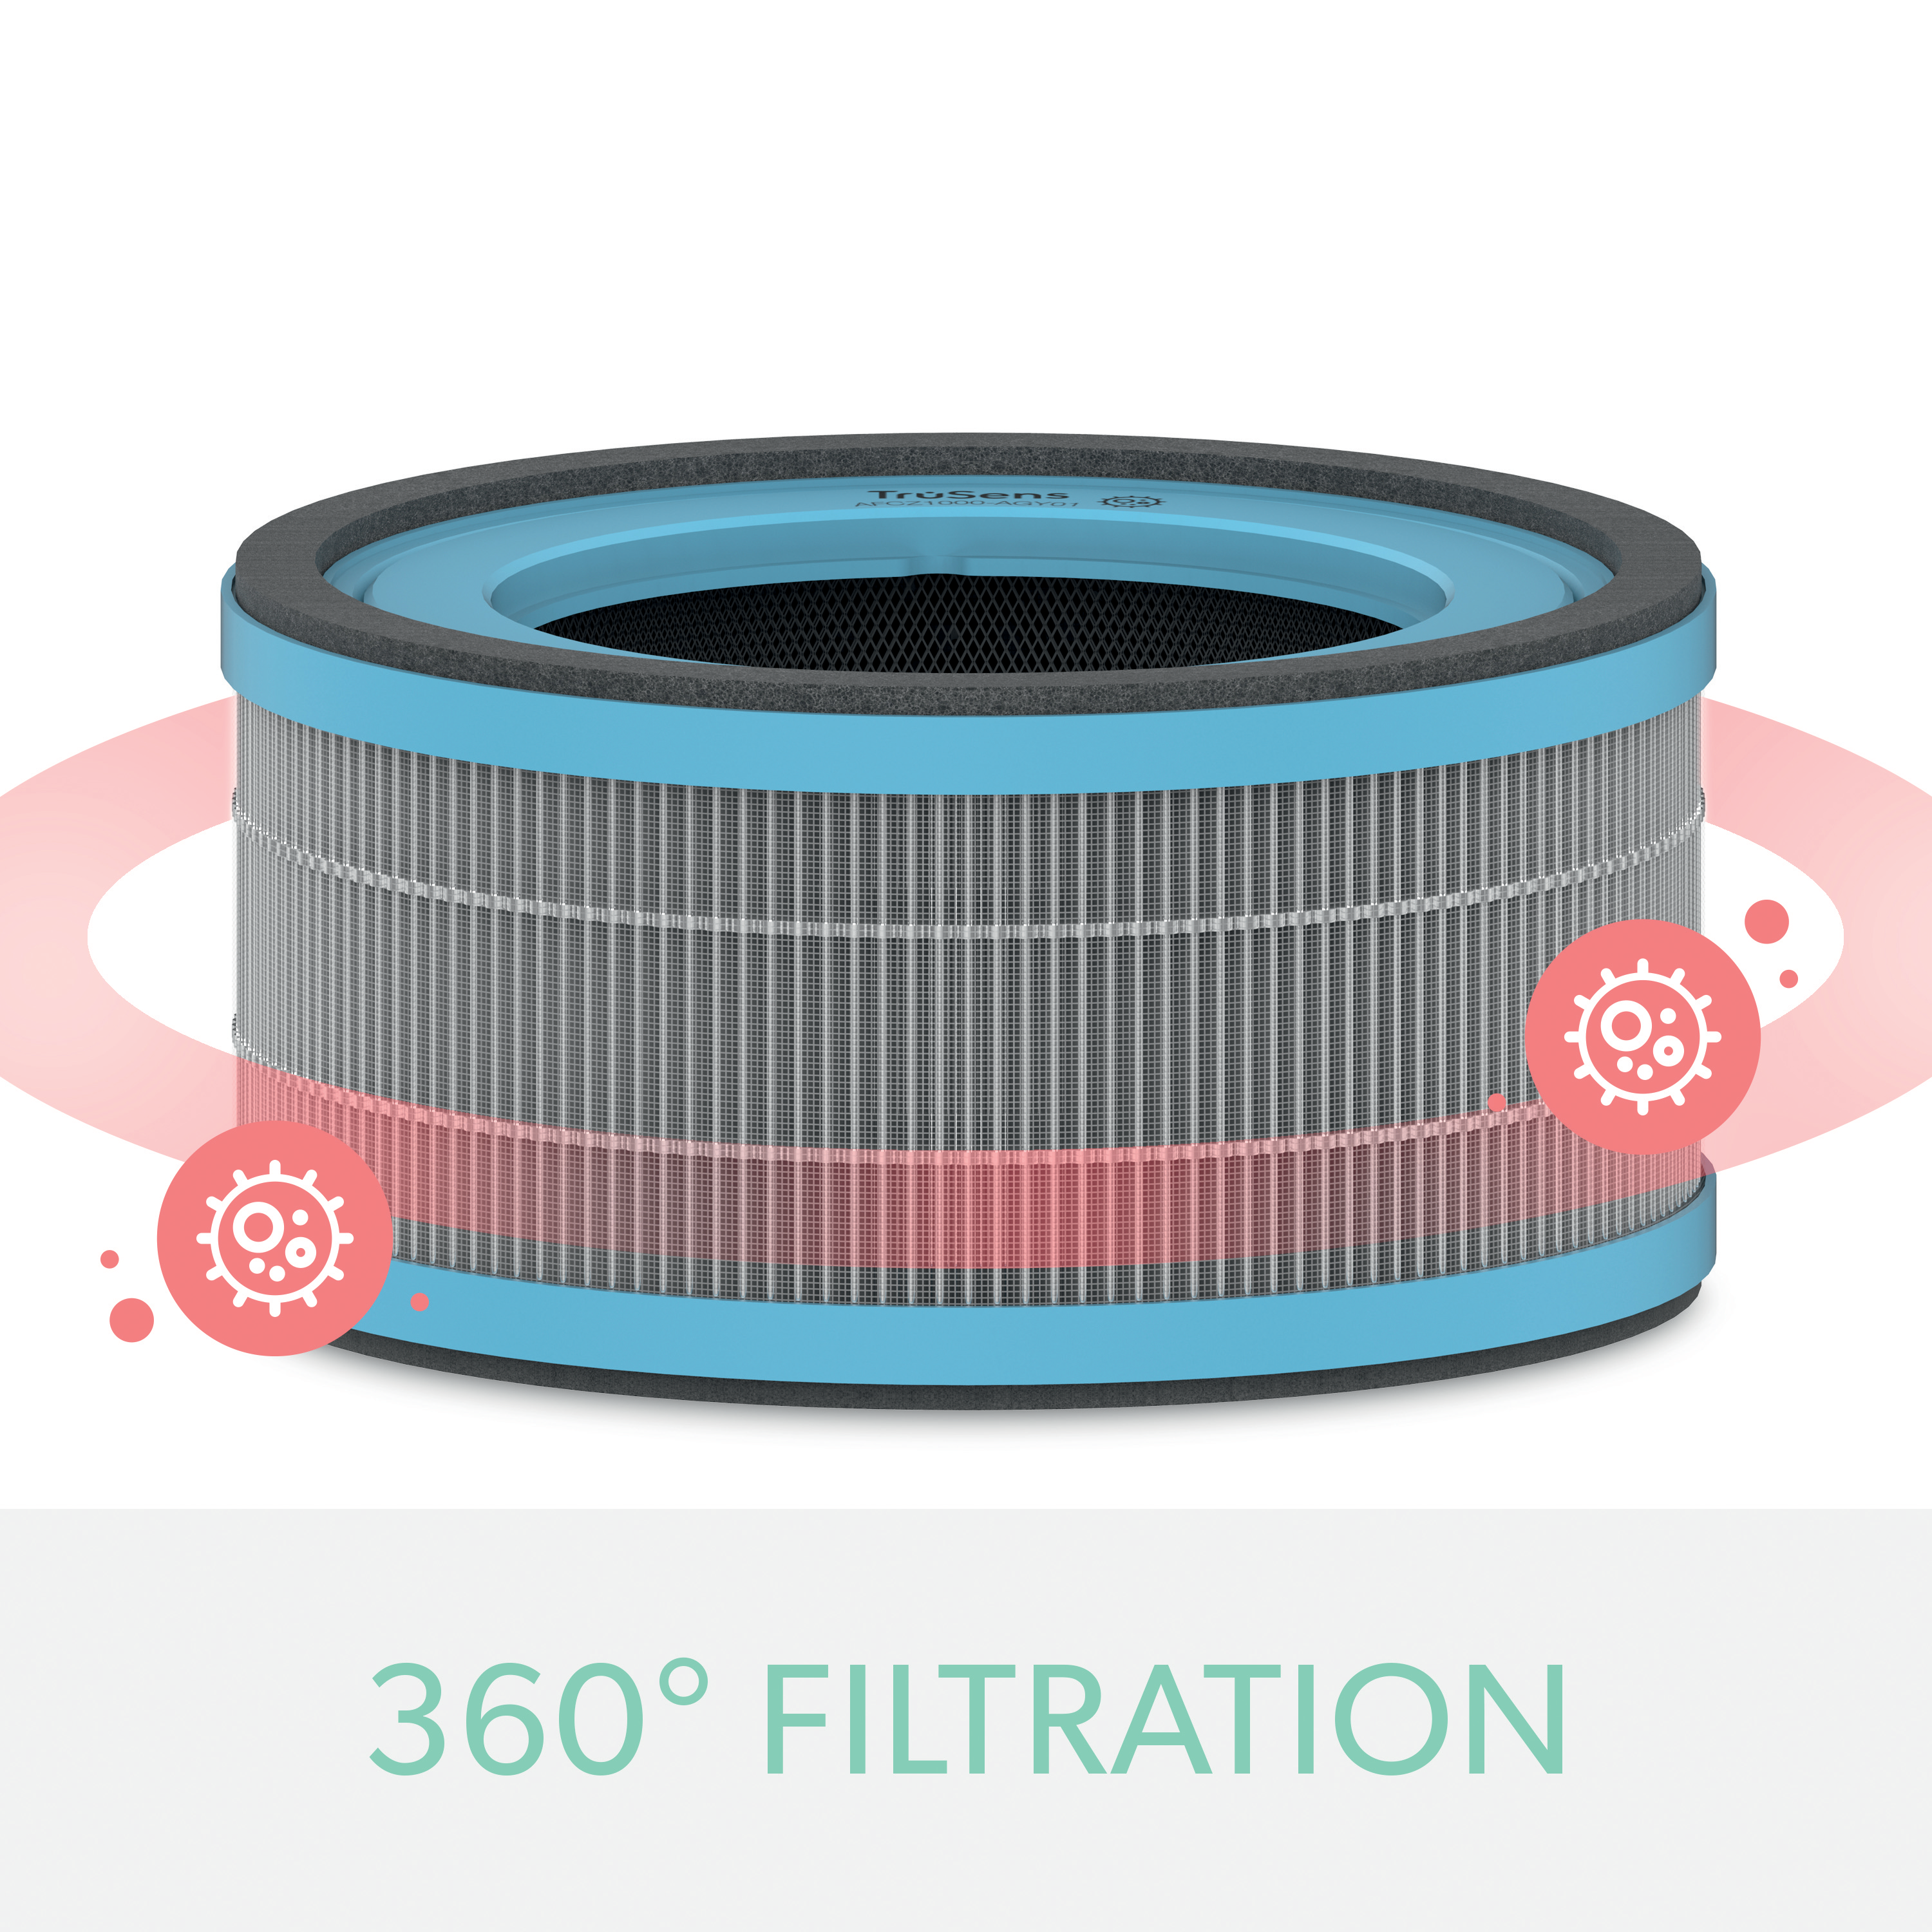 Trusens presenta tres nuevos filtros para sus purificadores